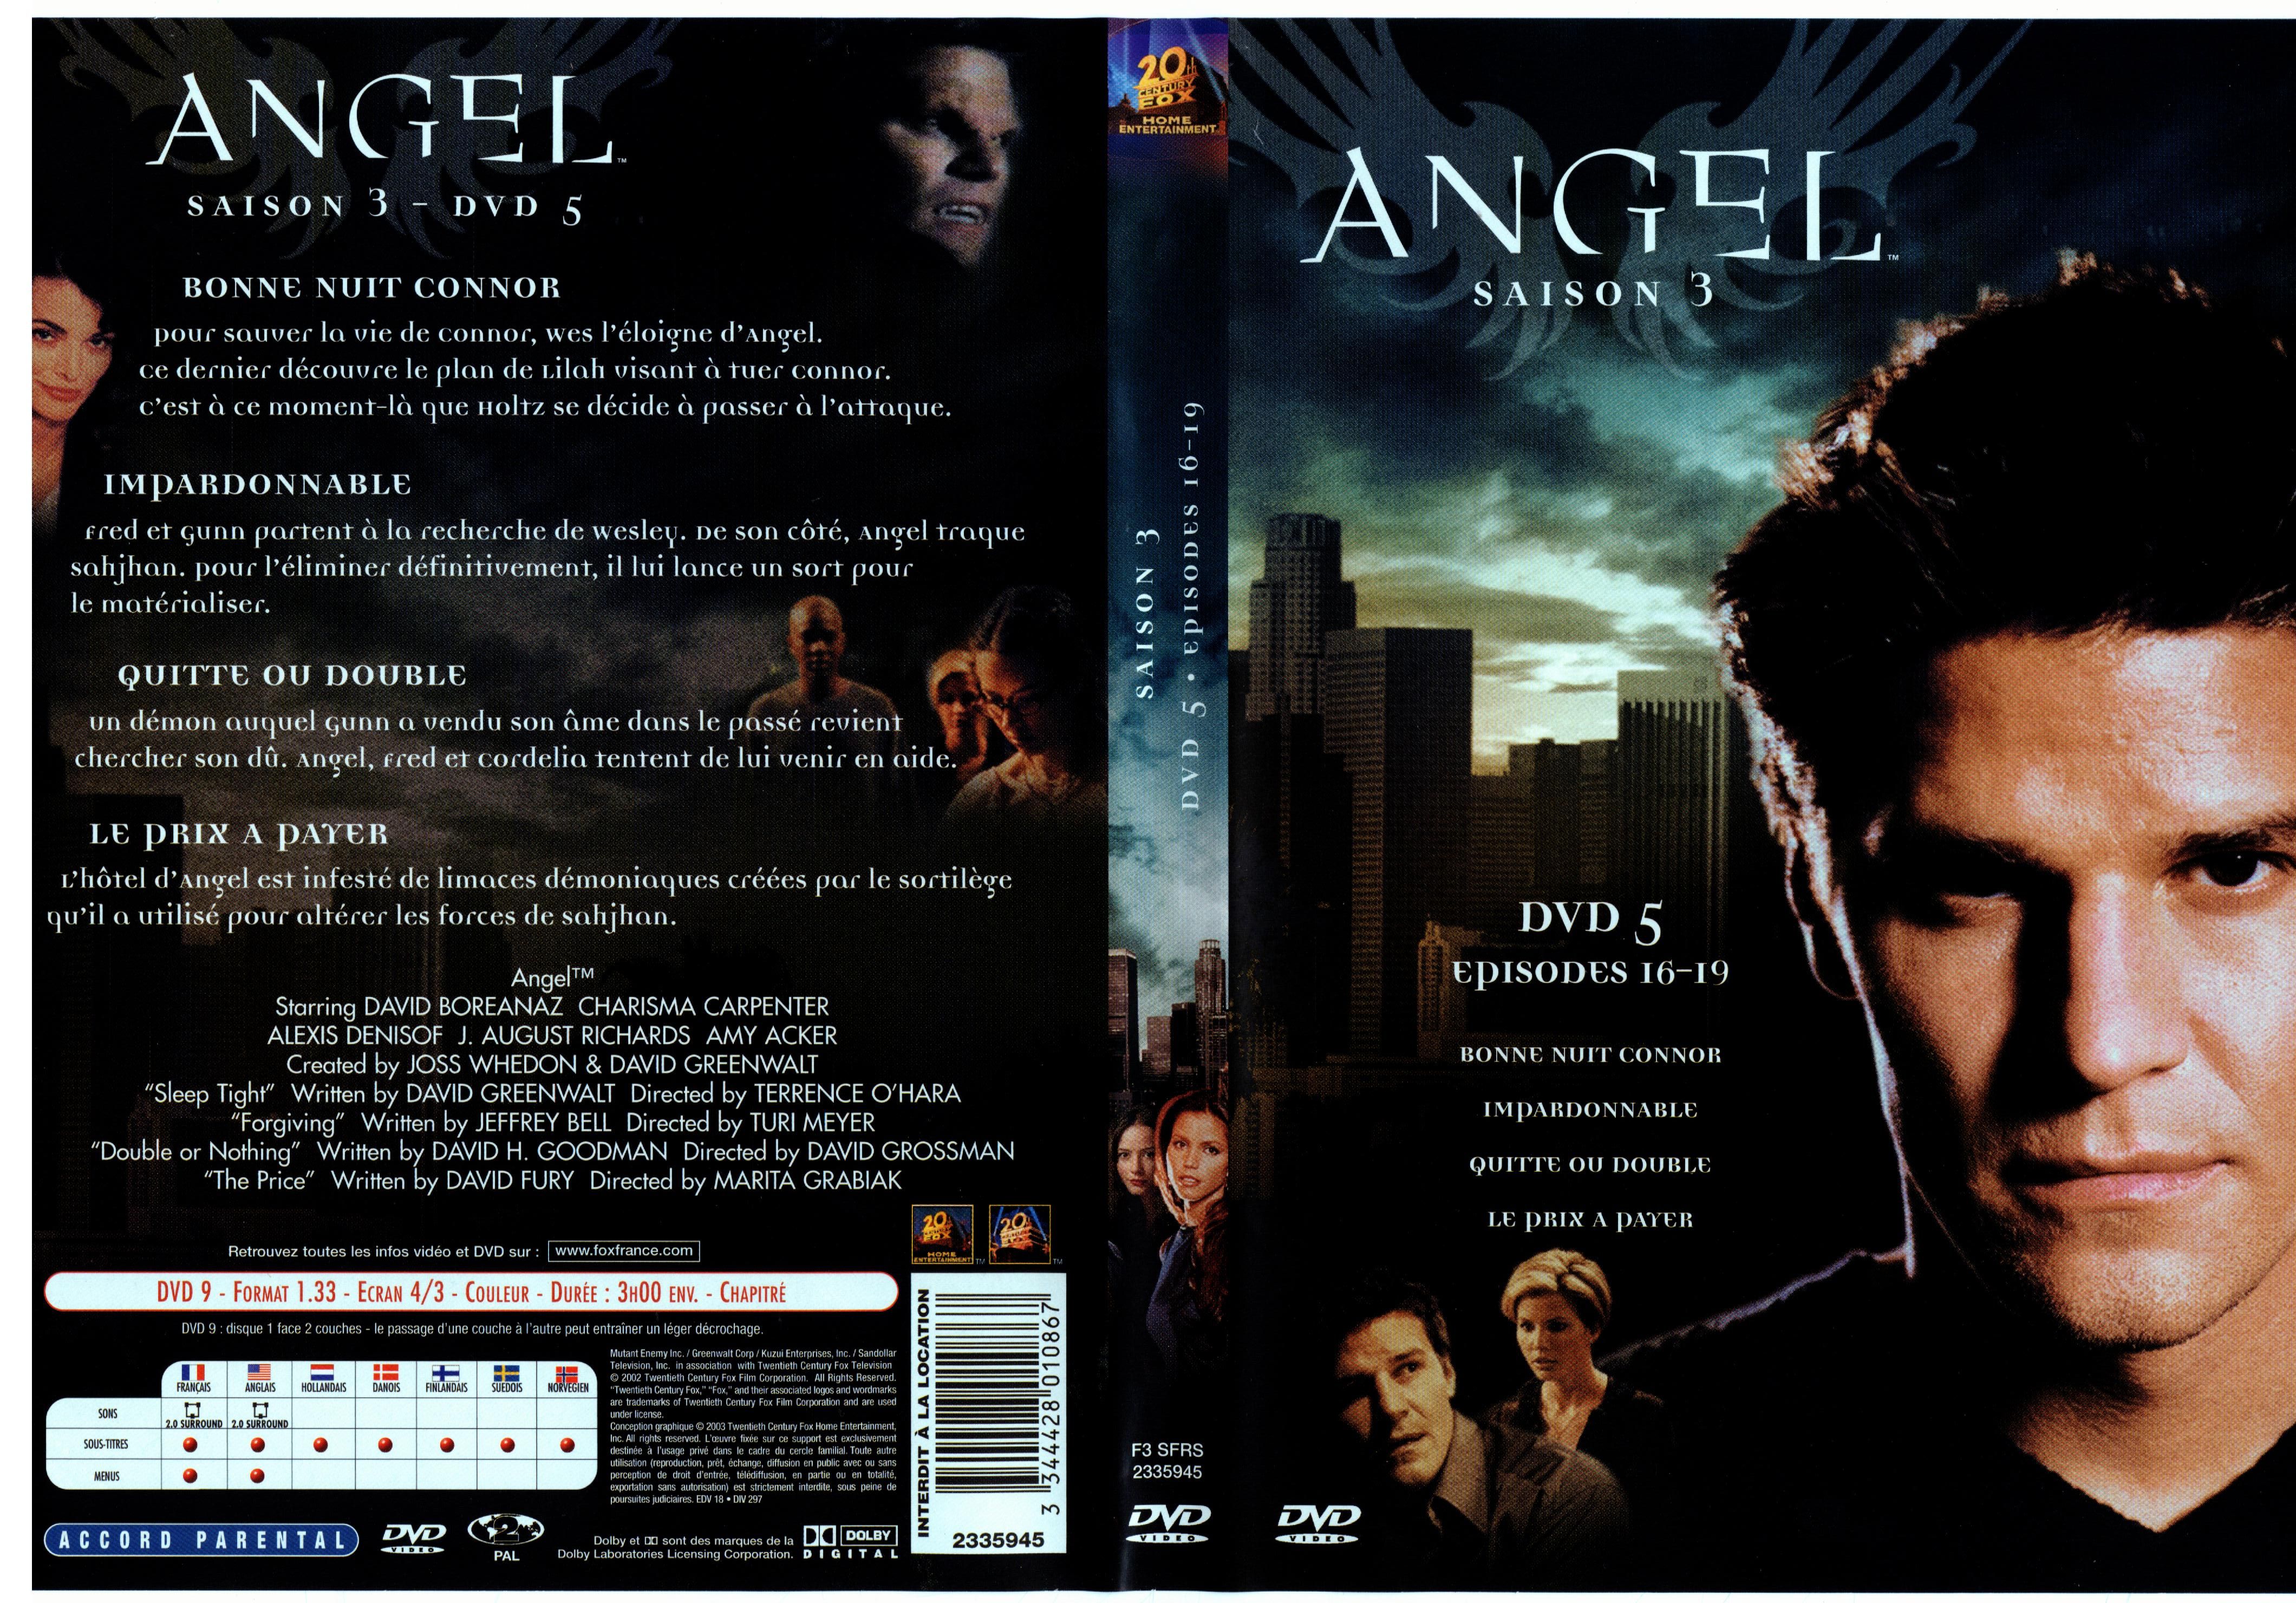 Jaquette DVD Angel Saison 3 dvd 5